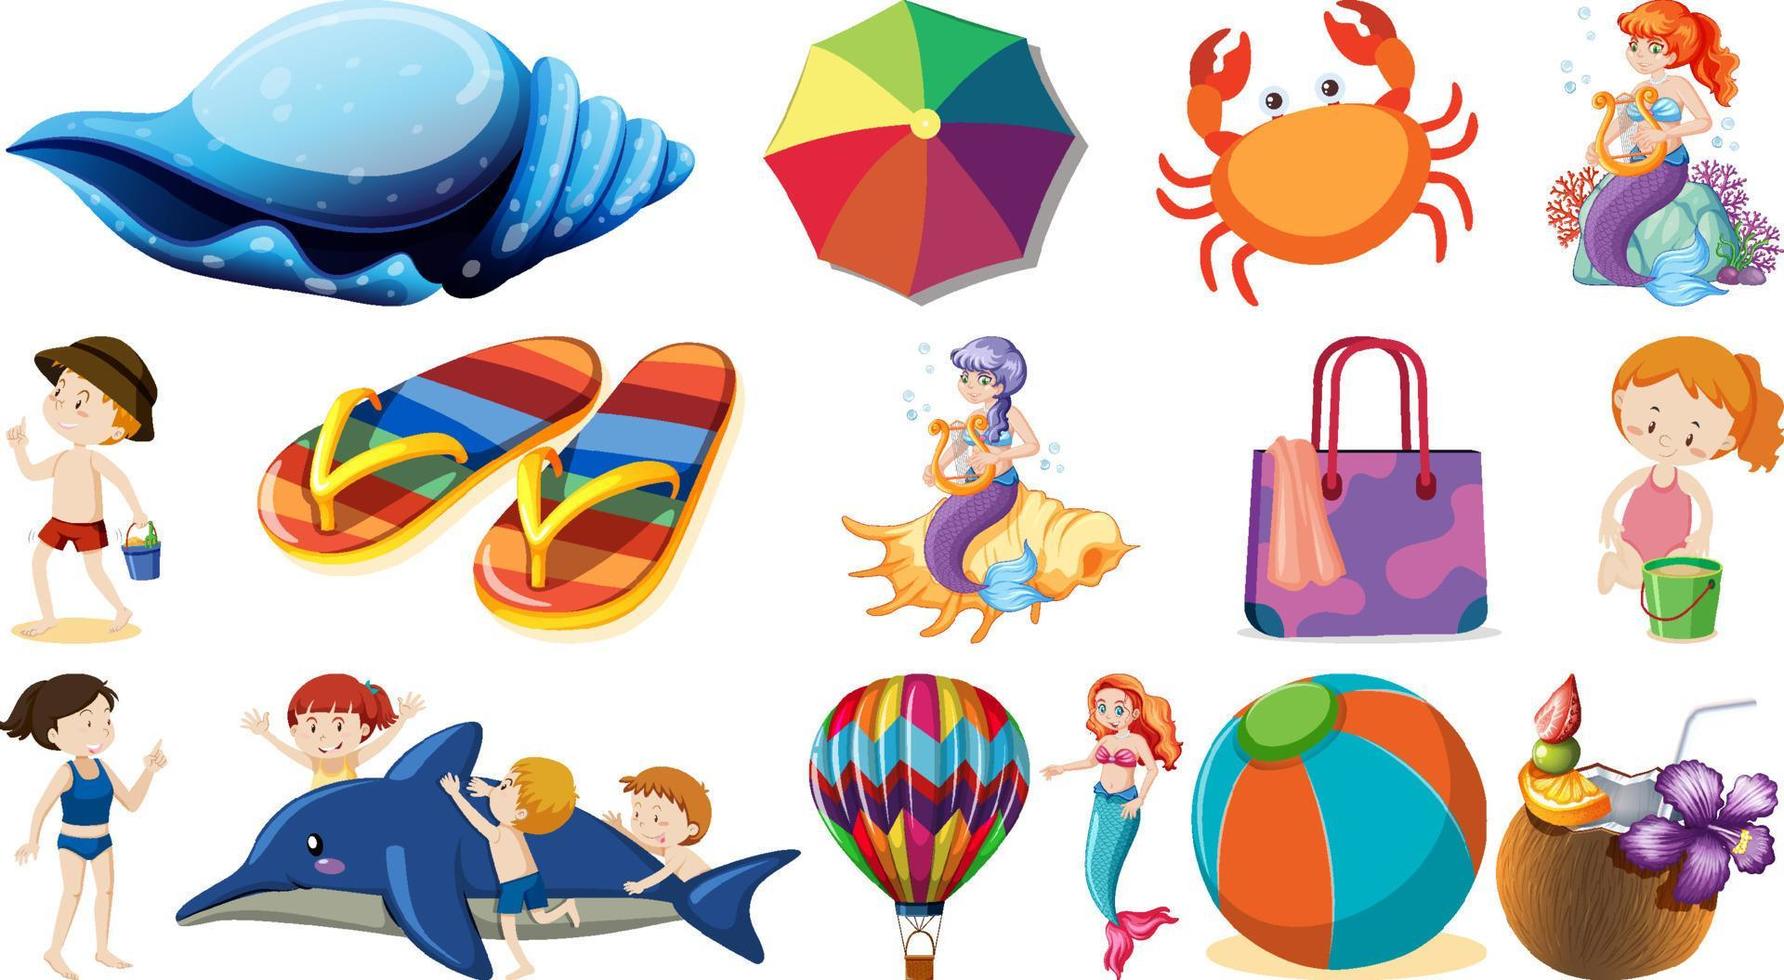 conjunto de objetos de praia de verão e personagens de desenhos animados vetor